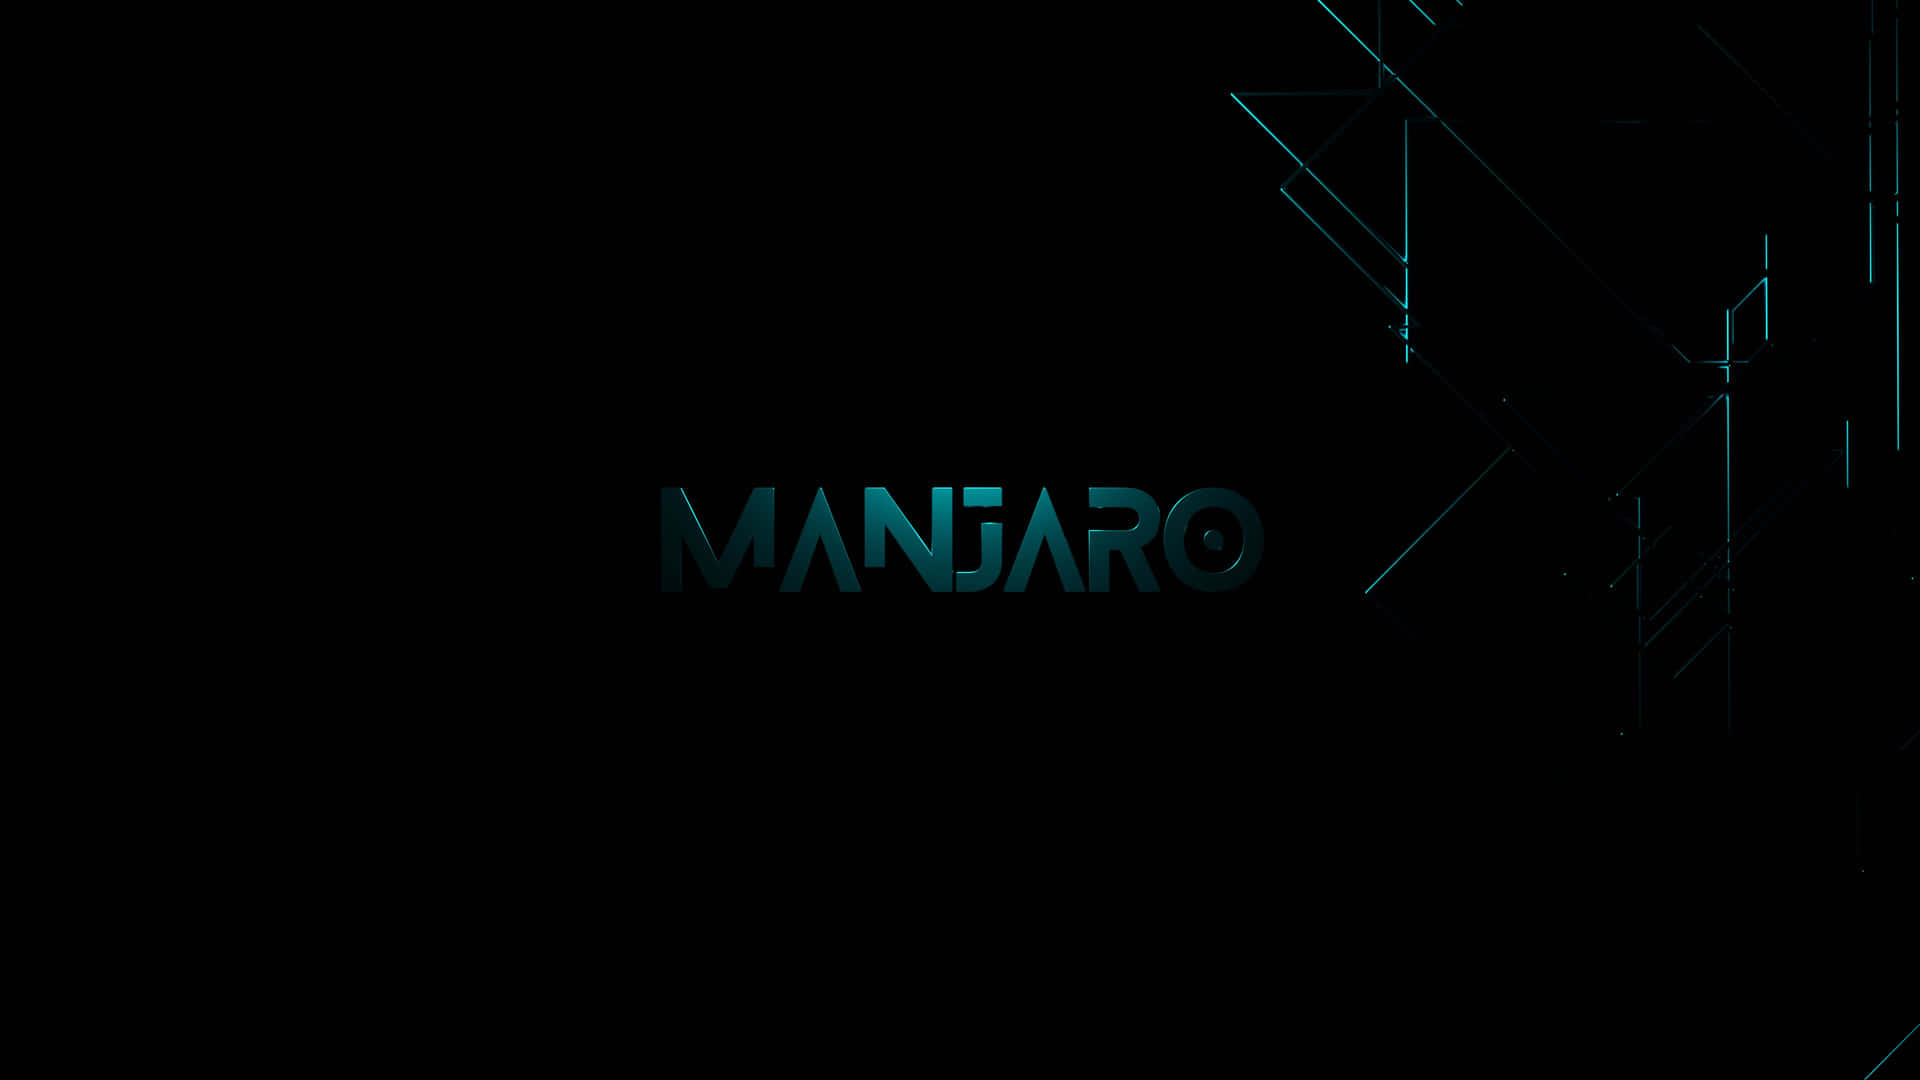 Teal Manjaro Logo Type Wallpaper